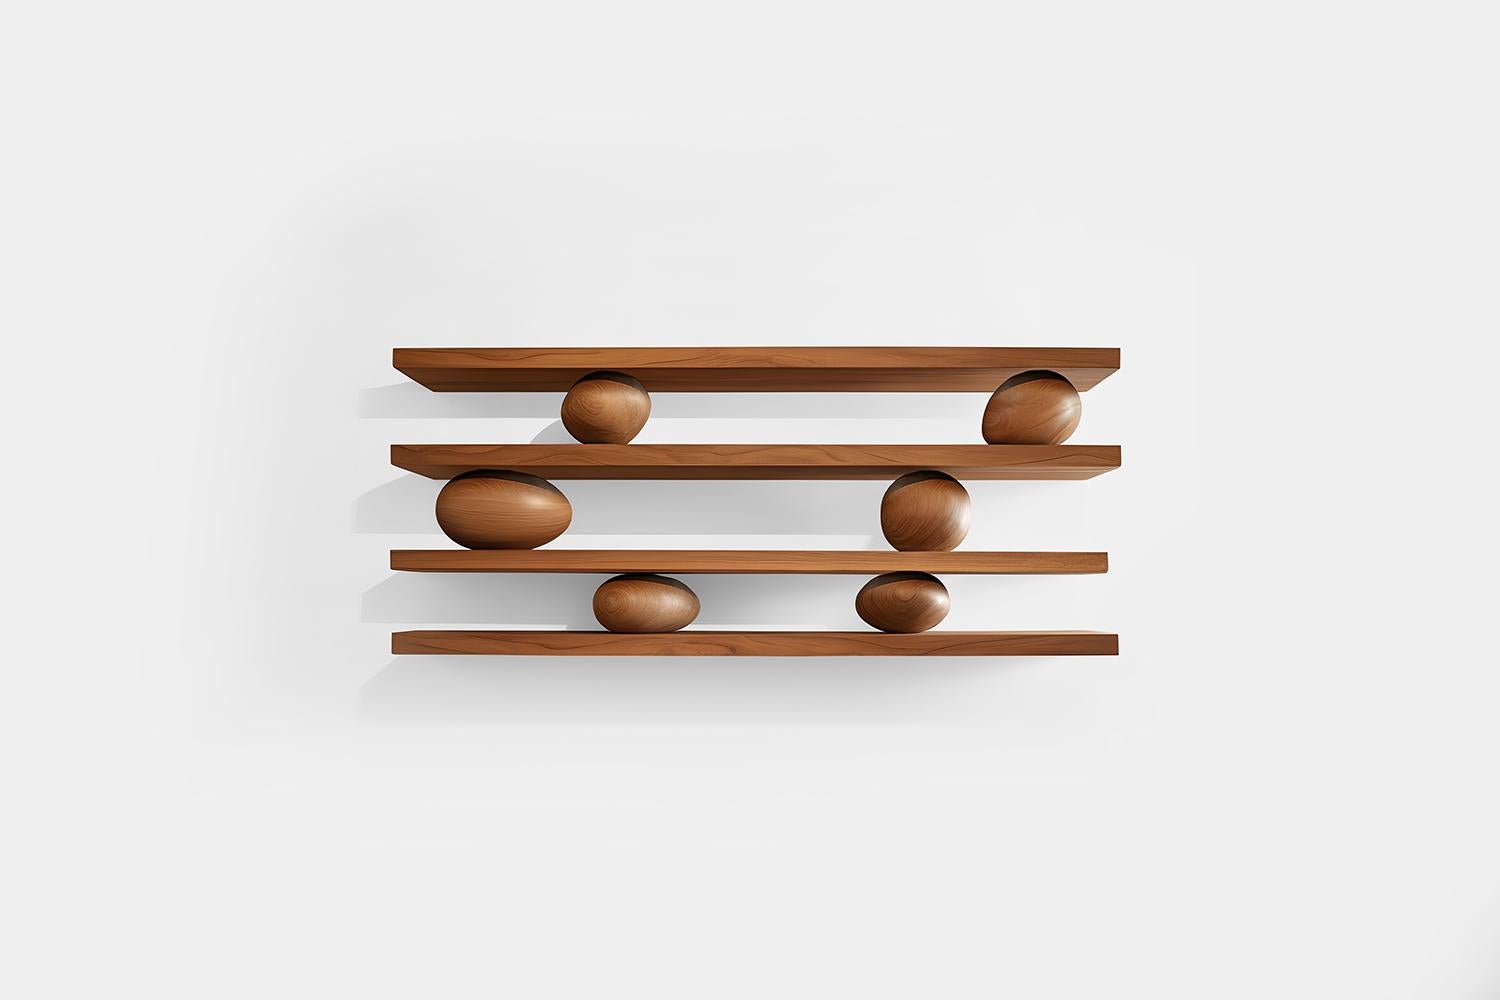 Ensemble de quatre étagères flottantes avec six accents sculpturaux en bois, Sereno by Joel Escalona

-

Que se passe-t-il lorsque la pratique devient de l'art ?
Que se passe-t-il lorsque l'ornementation prend de l'importance ?

Telles sont